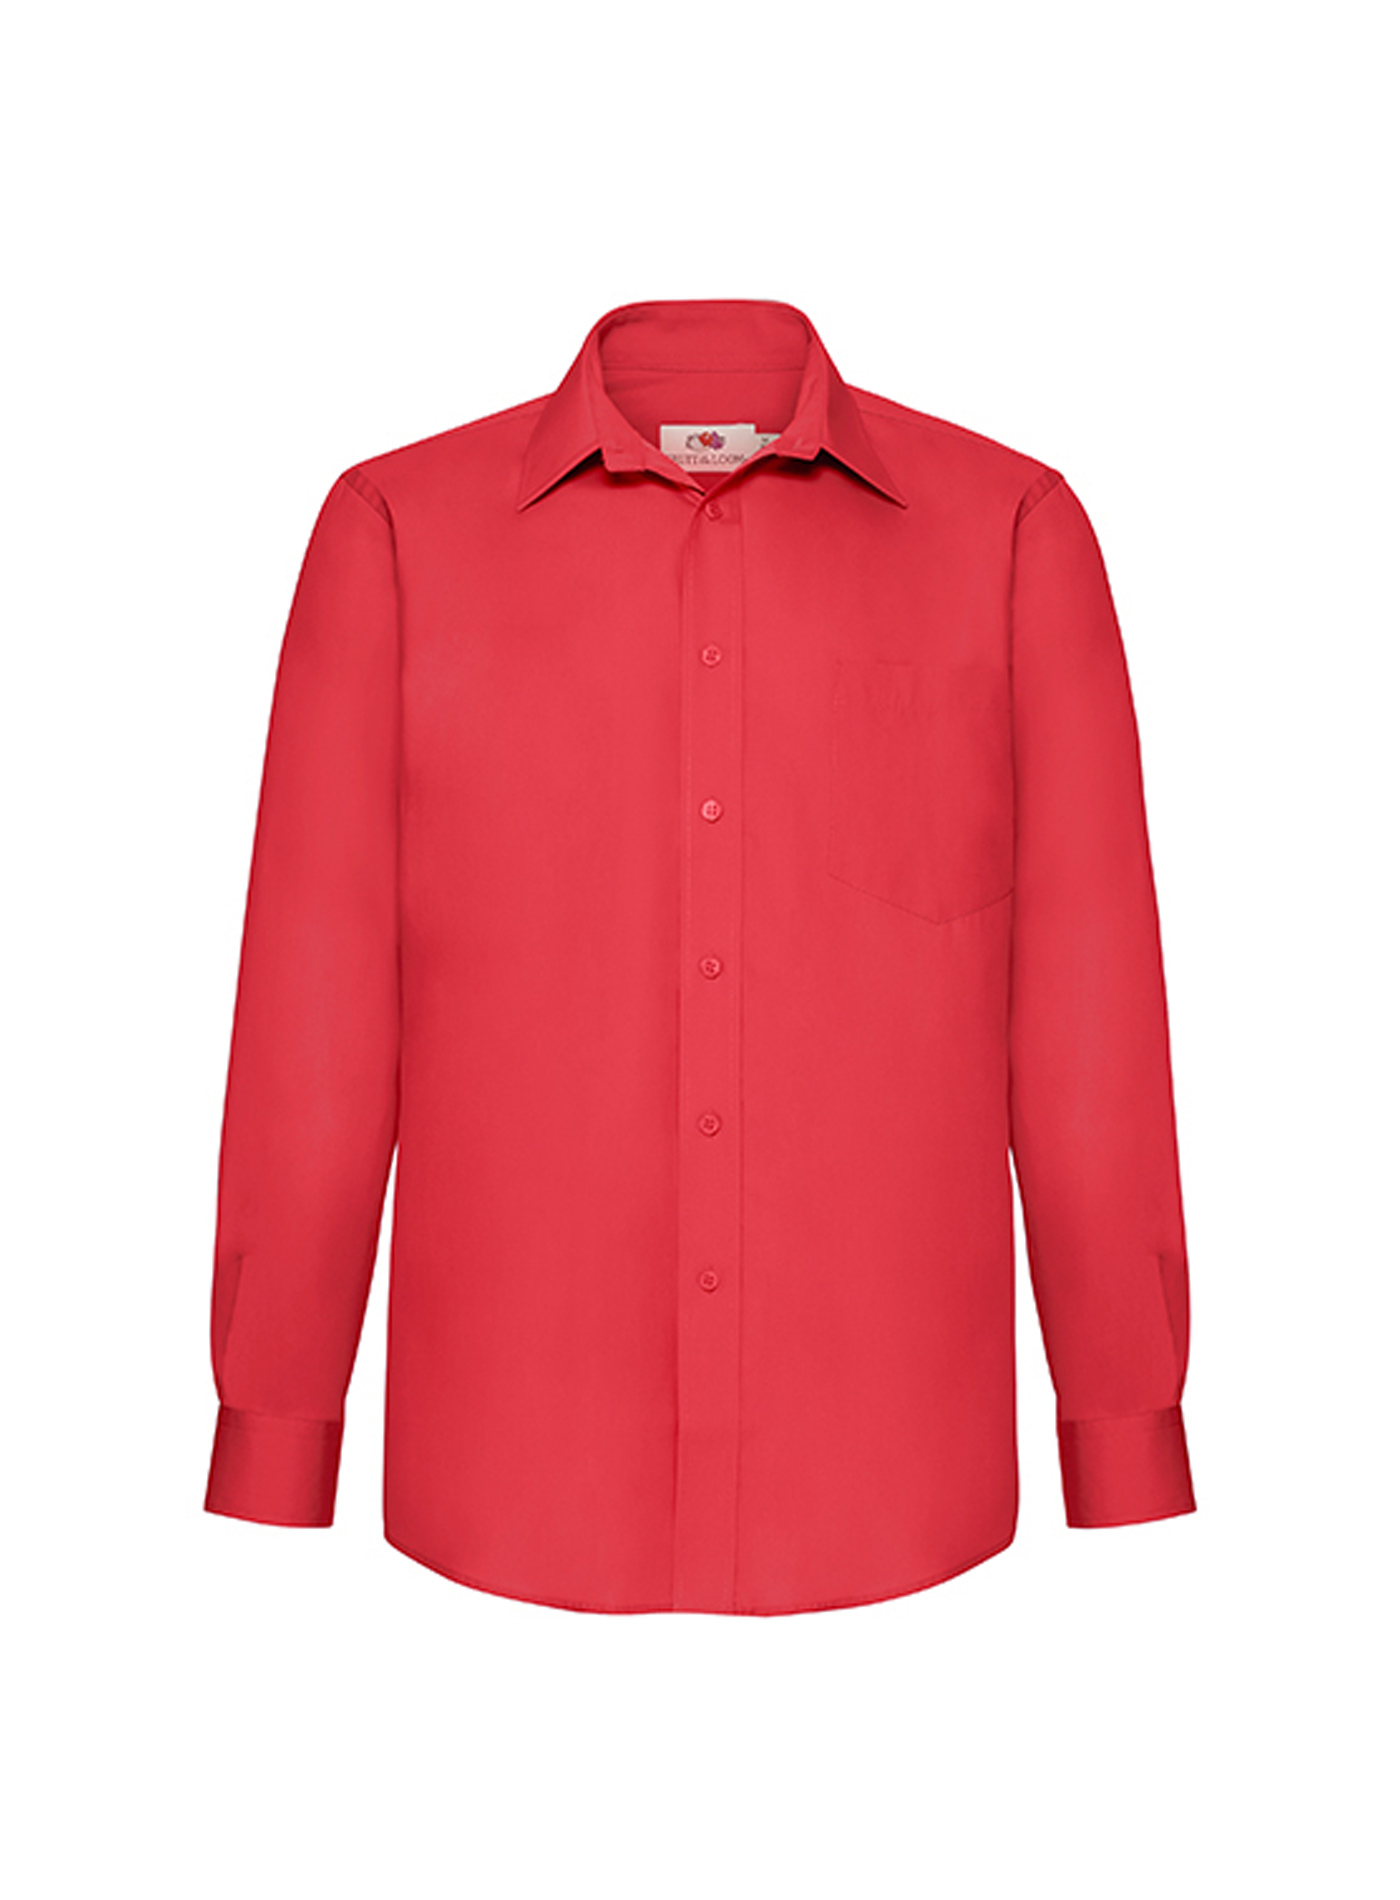 Pánská popelínová košile s dlouhým rukávem Fruit of the Loom - Červená M